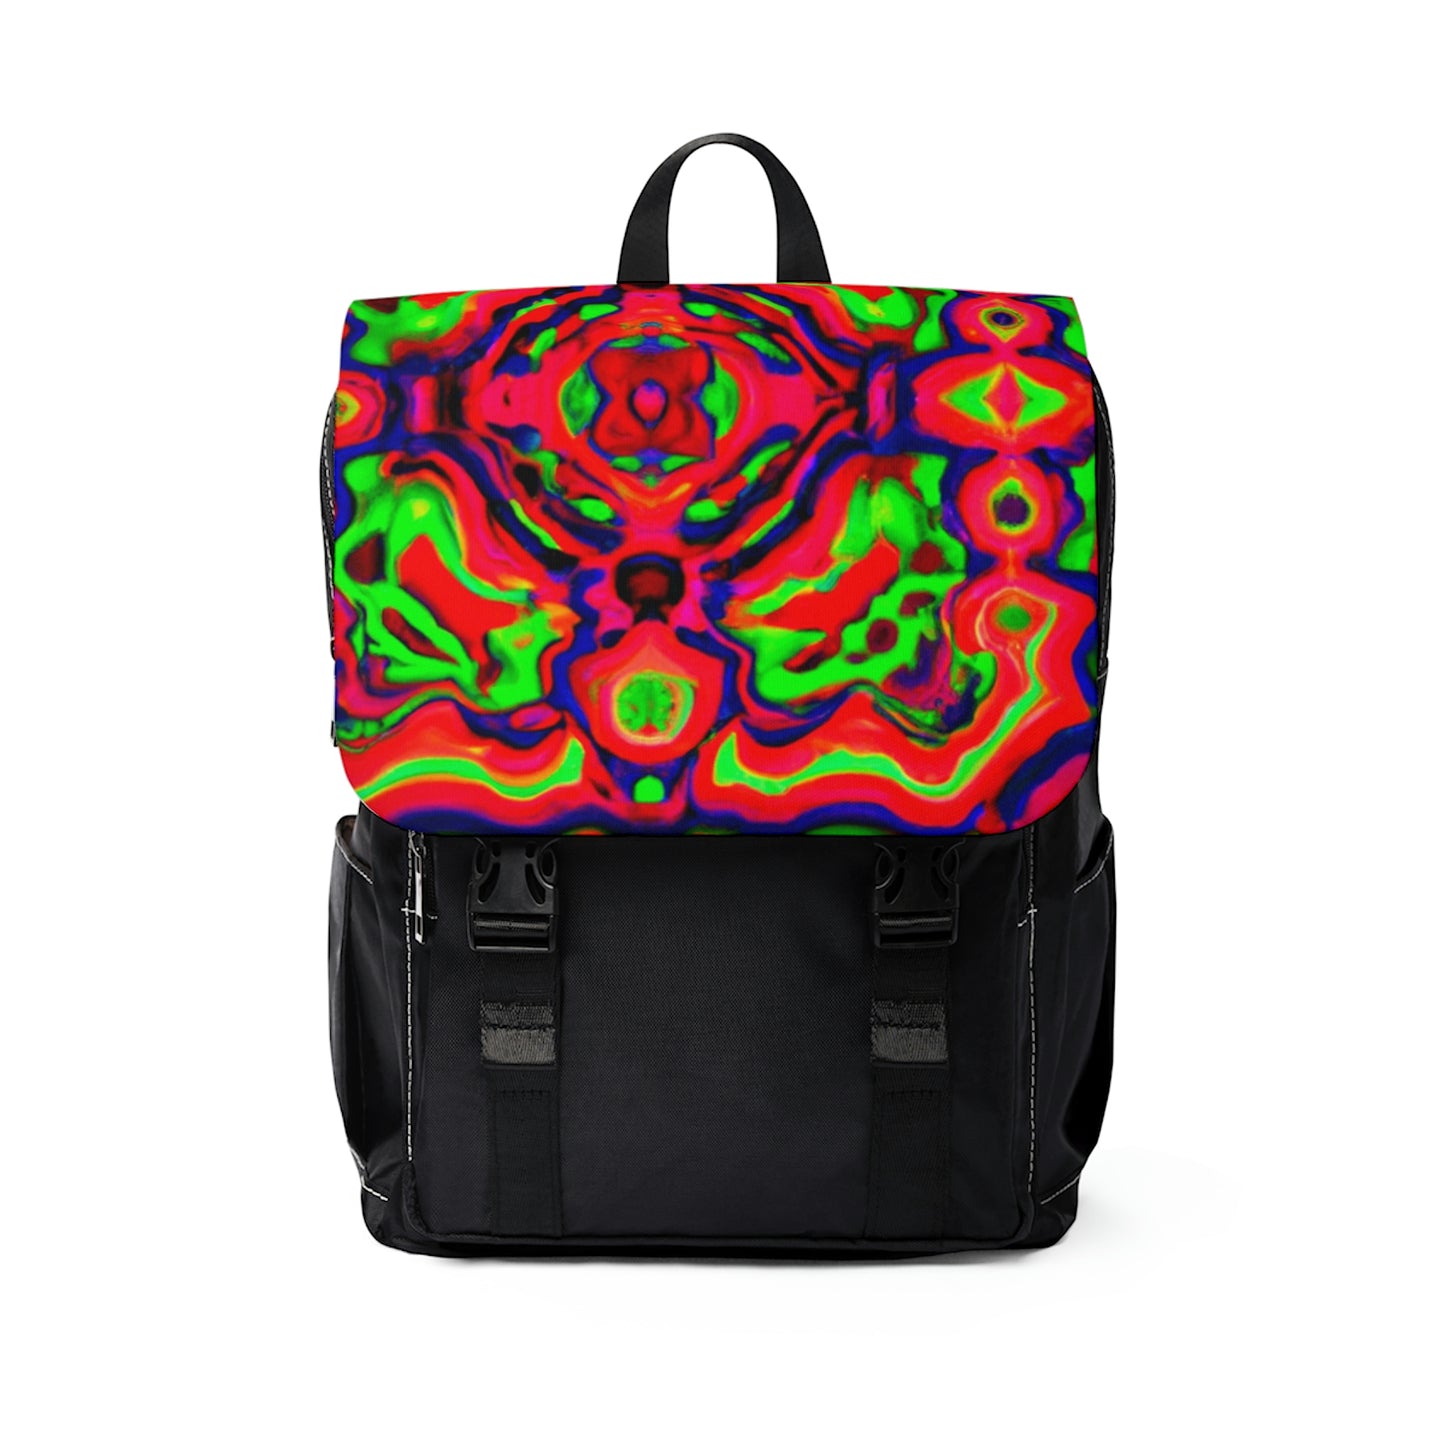 Harlowe - Psychedelic Shoulder Travel Backpack Bag